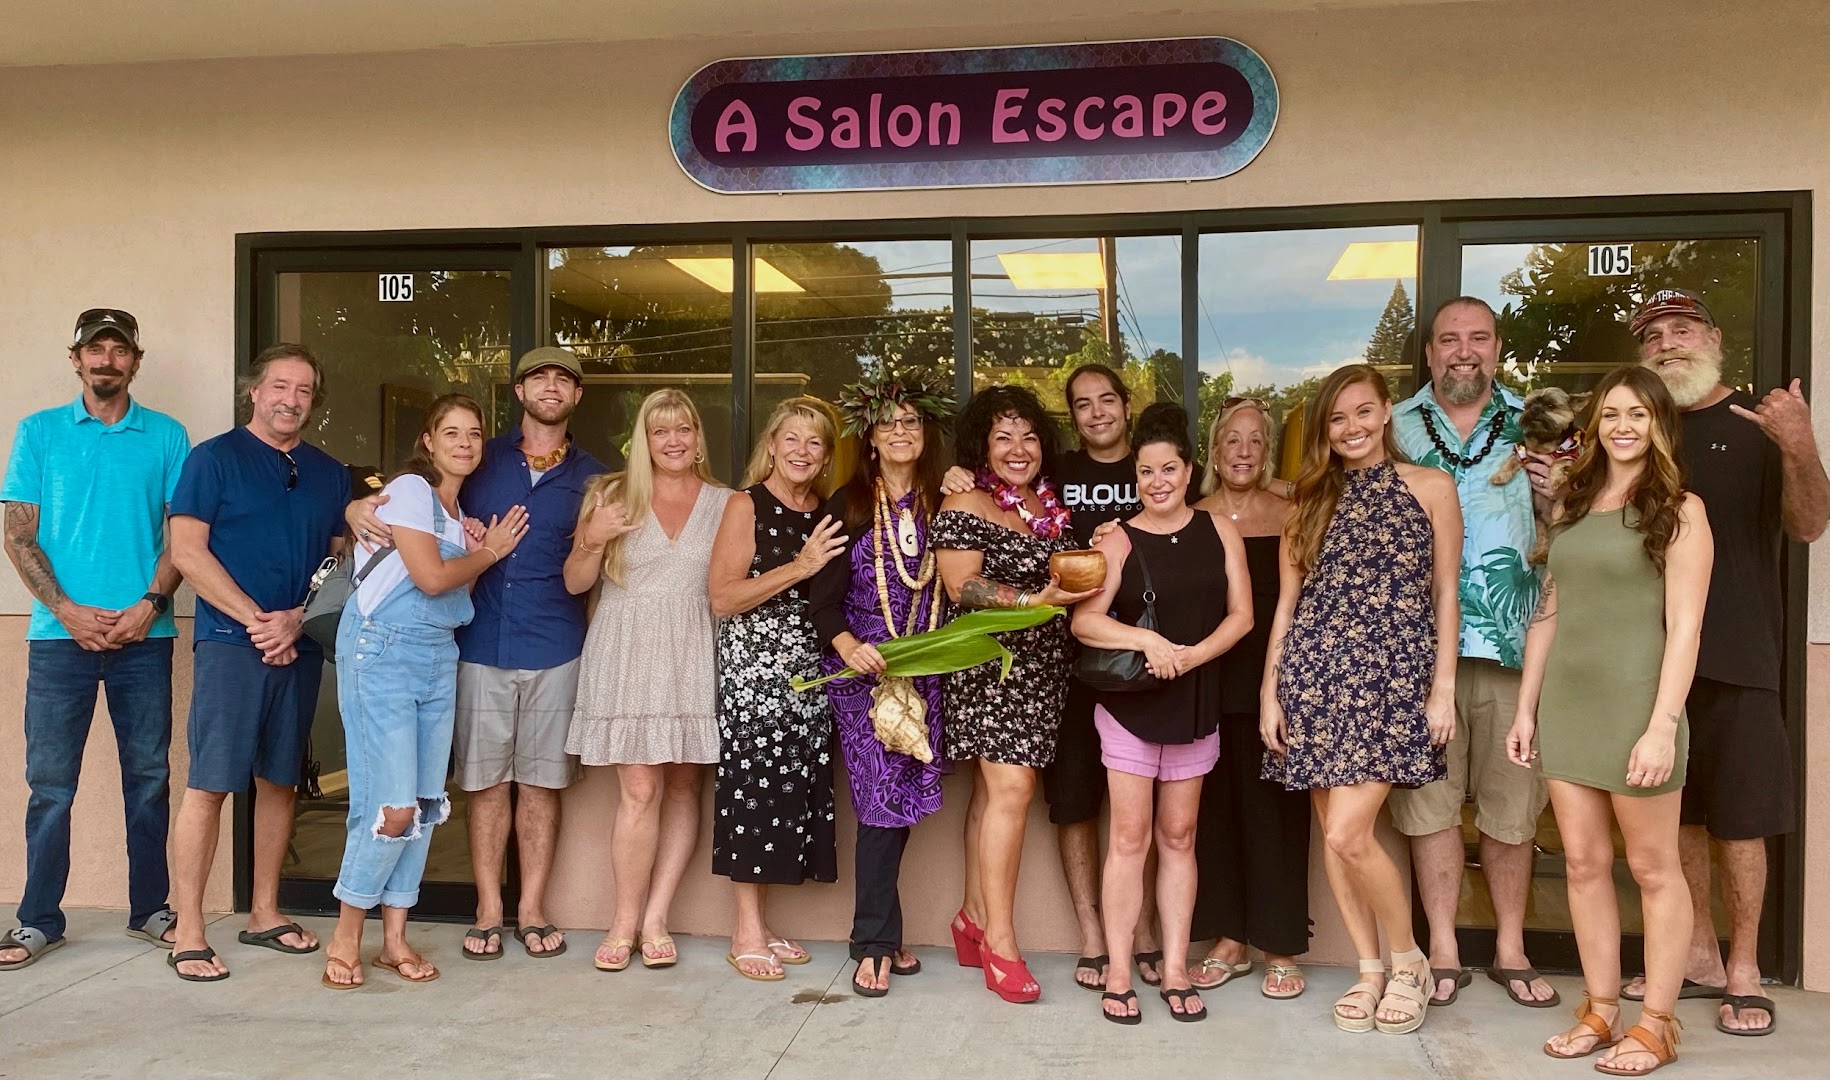 A Salon Escape